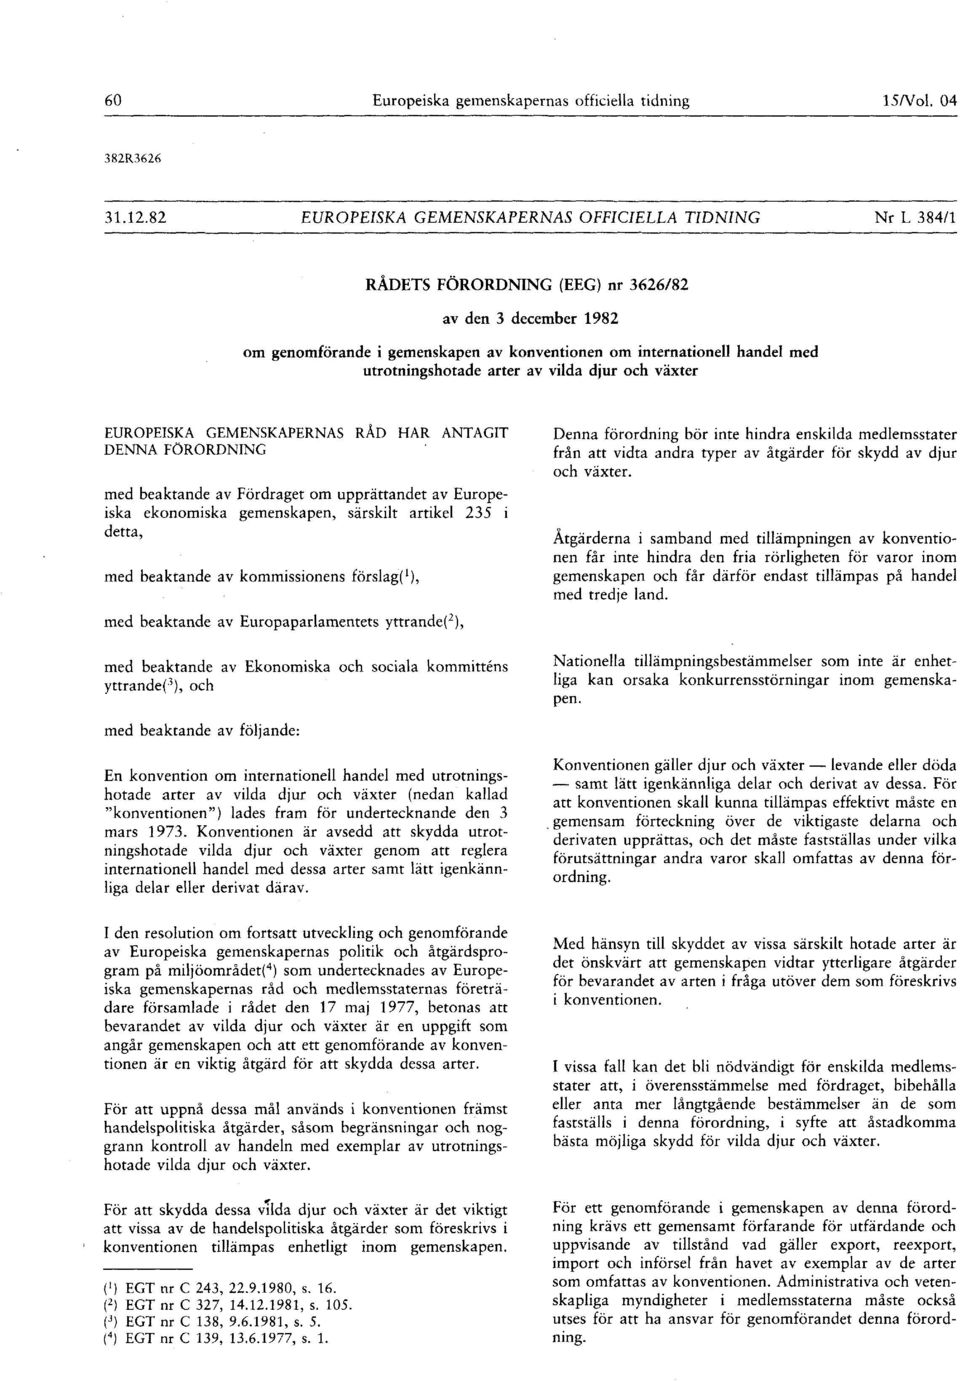 Fördraget om upprättandet av Europeiska ekonomiska gemenskapen, särskilt artikel 235 i detta, med beaktande av kommissionens förslag ( 1 ), med beaktande av Europaparlamentets yttrande ( 2 ), med